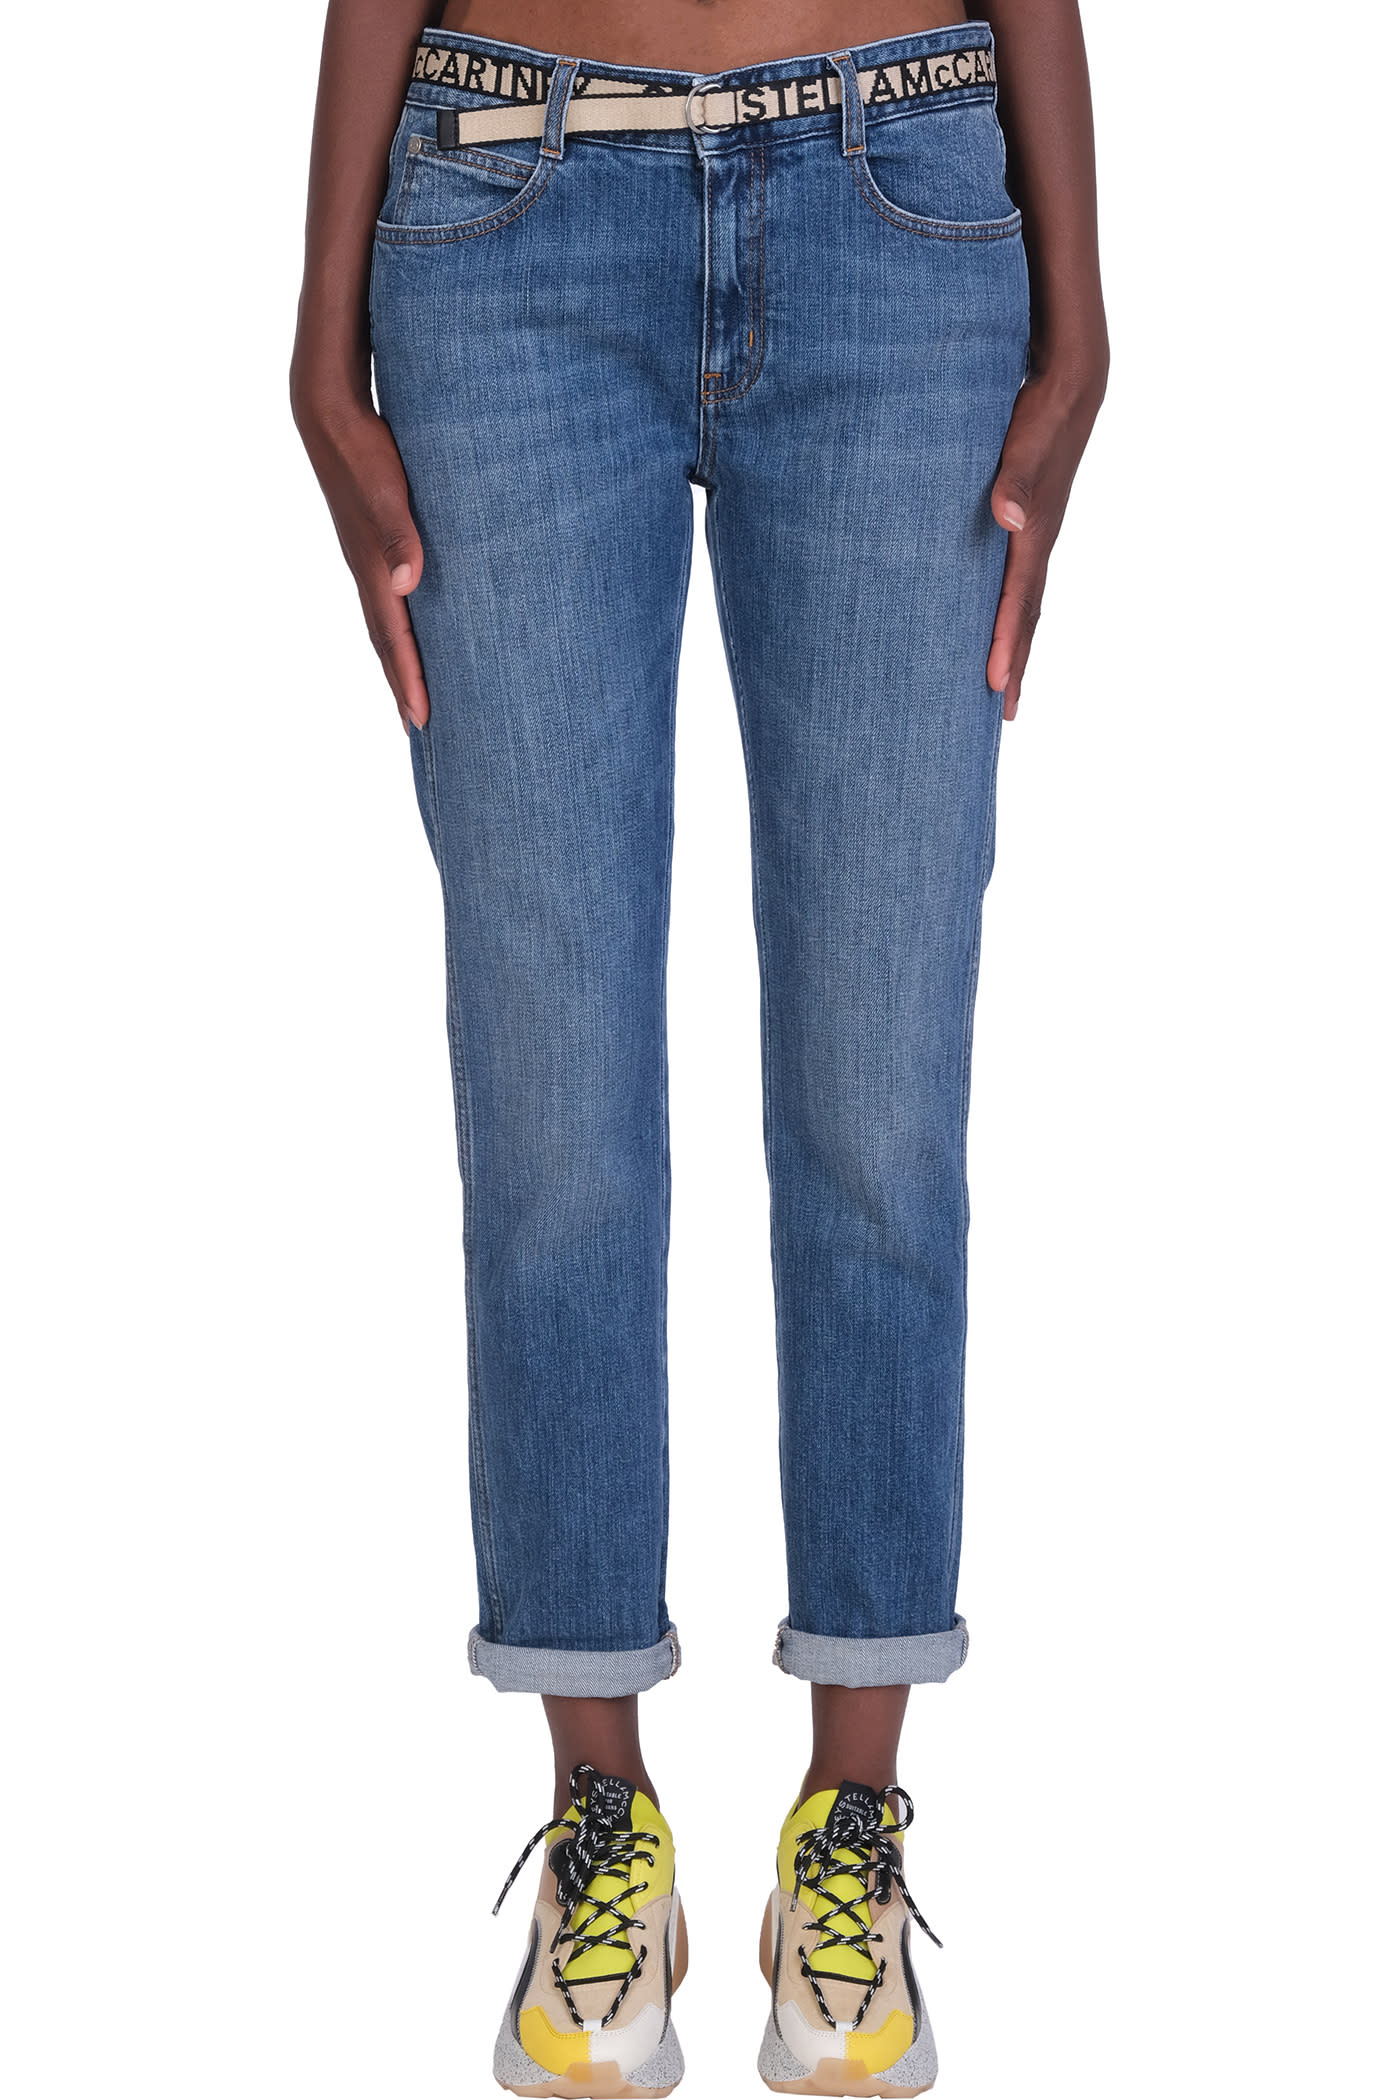 Stella McCartney Jeans In Cyan Cotton